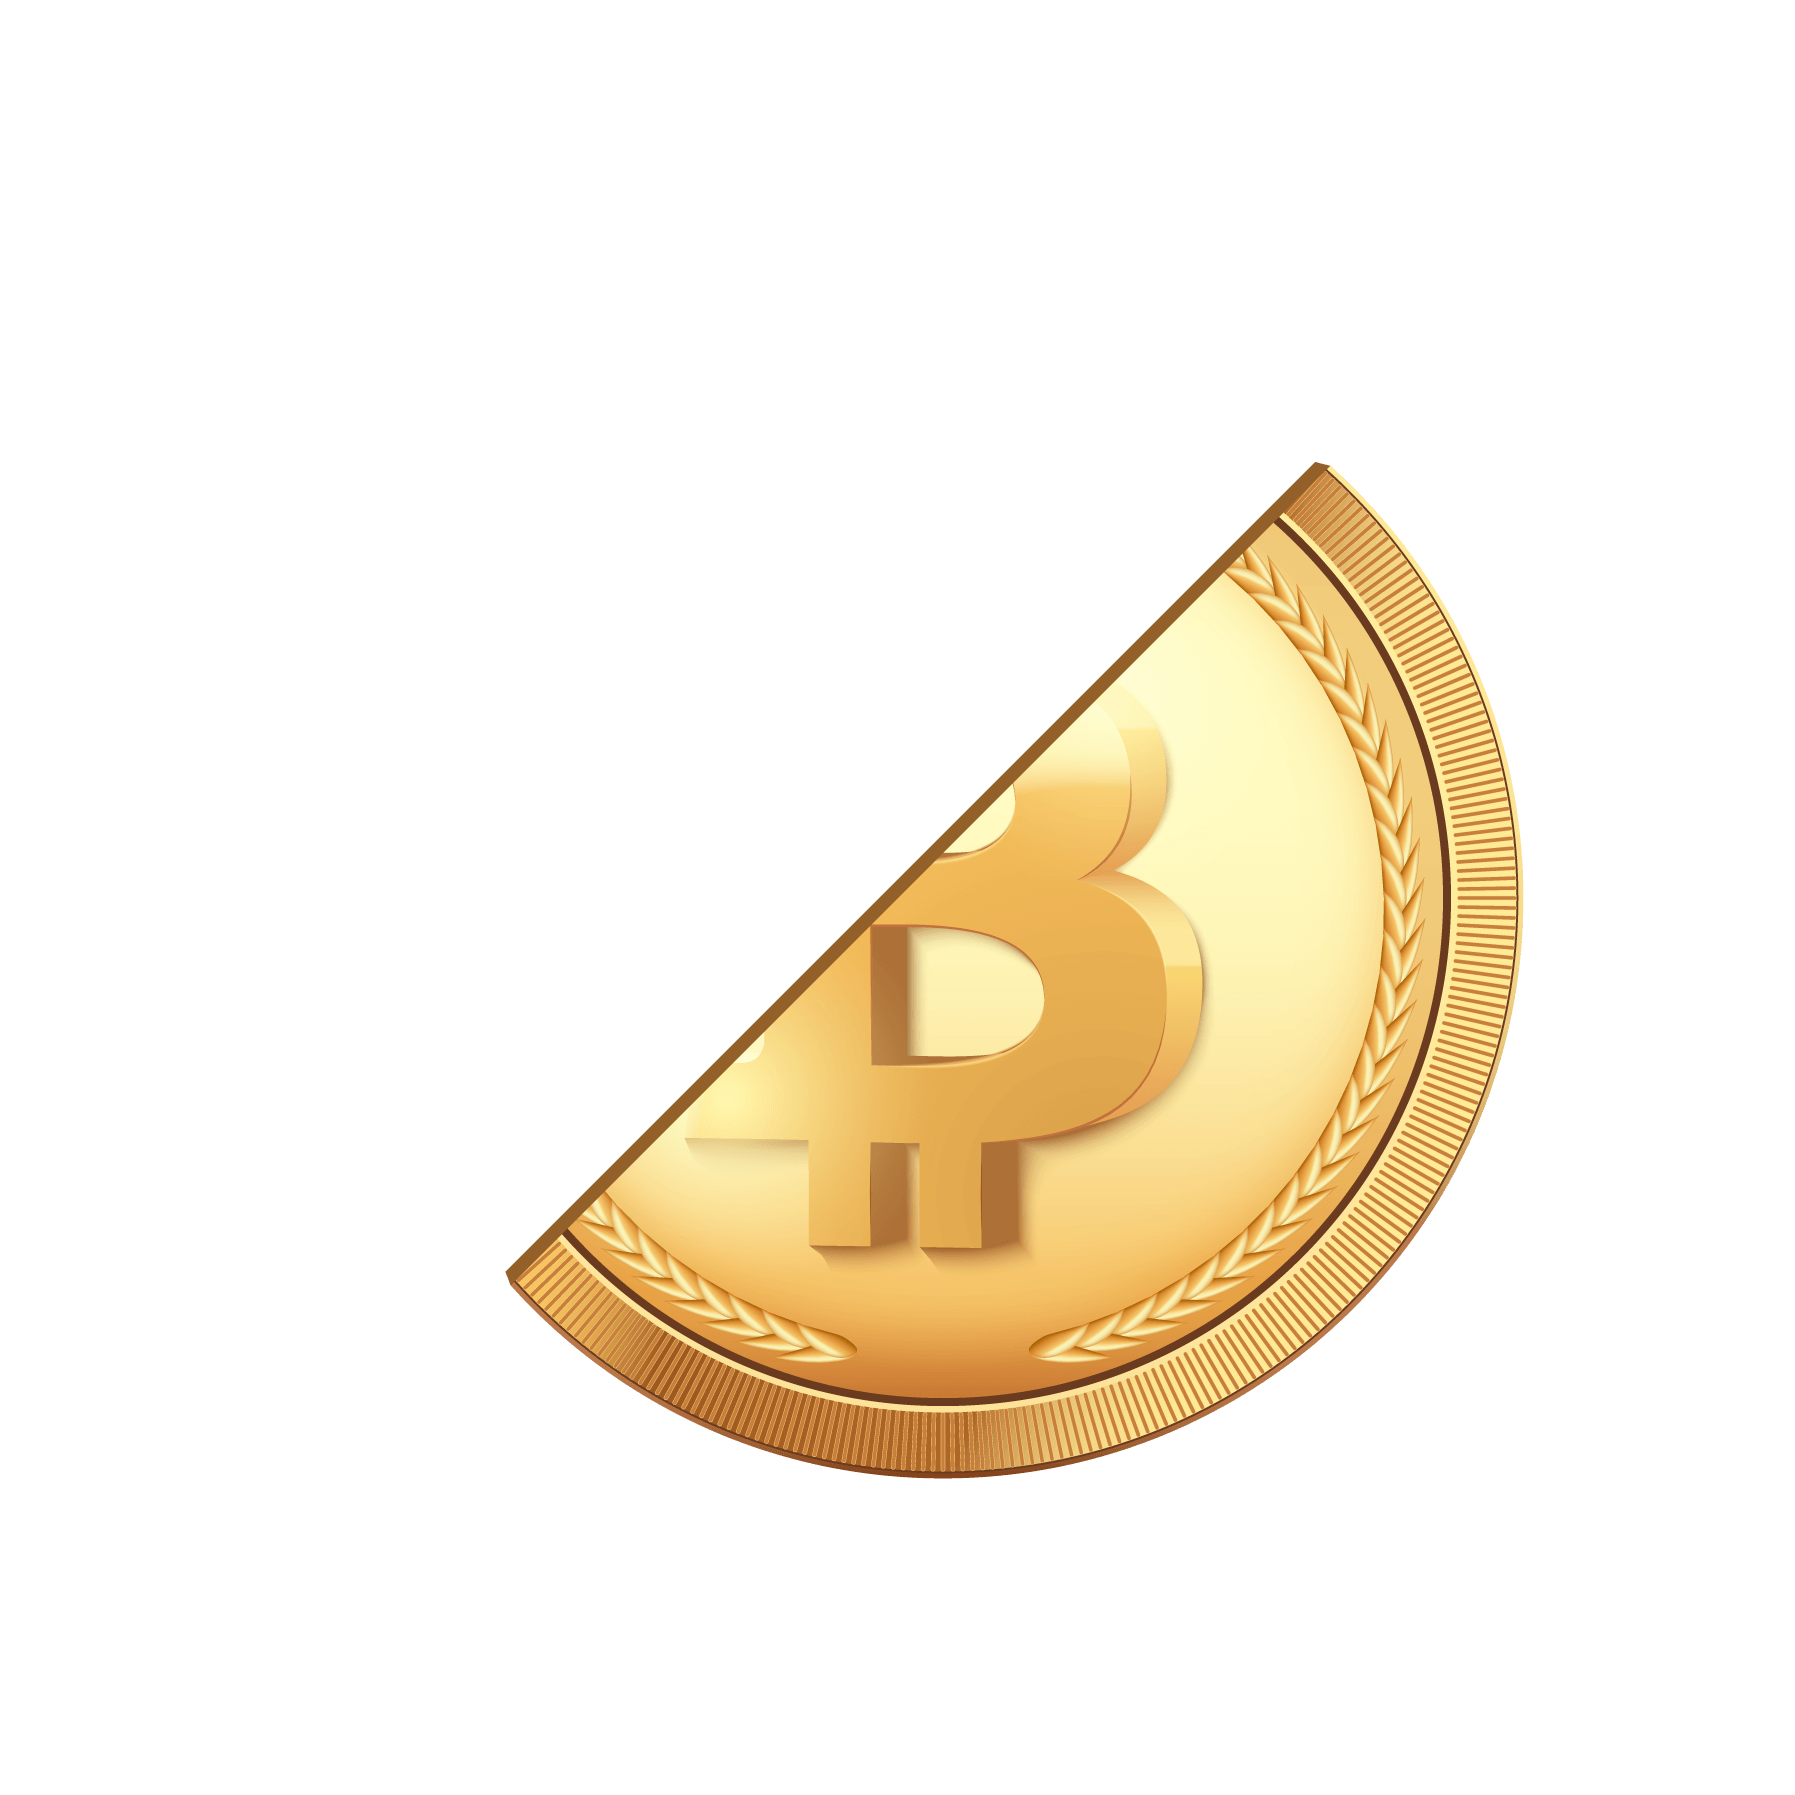 bitcoin aureus